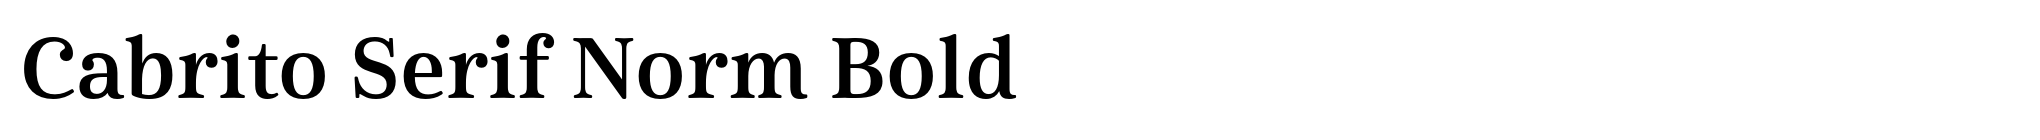 Cabrito Serif Norm Bold image